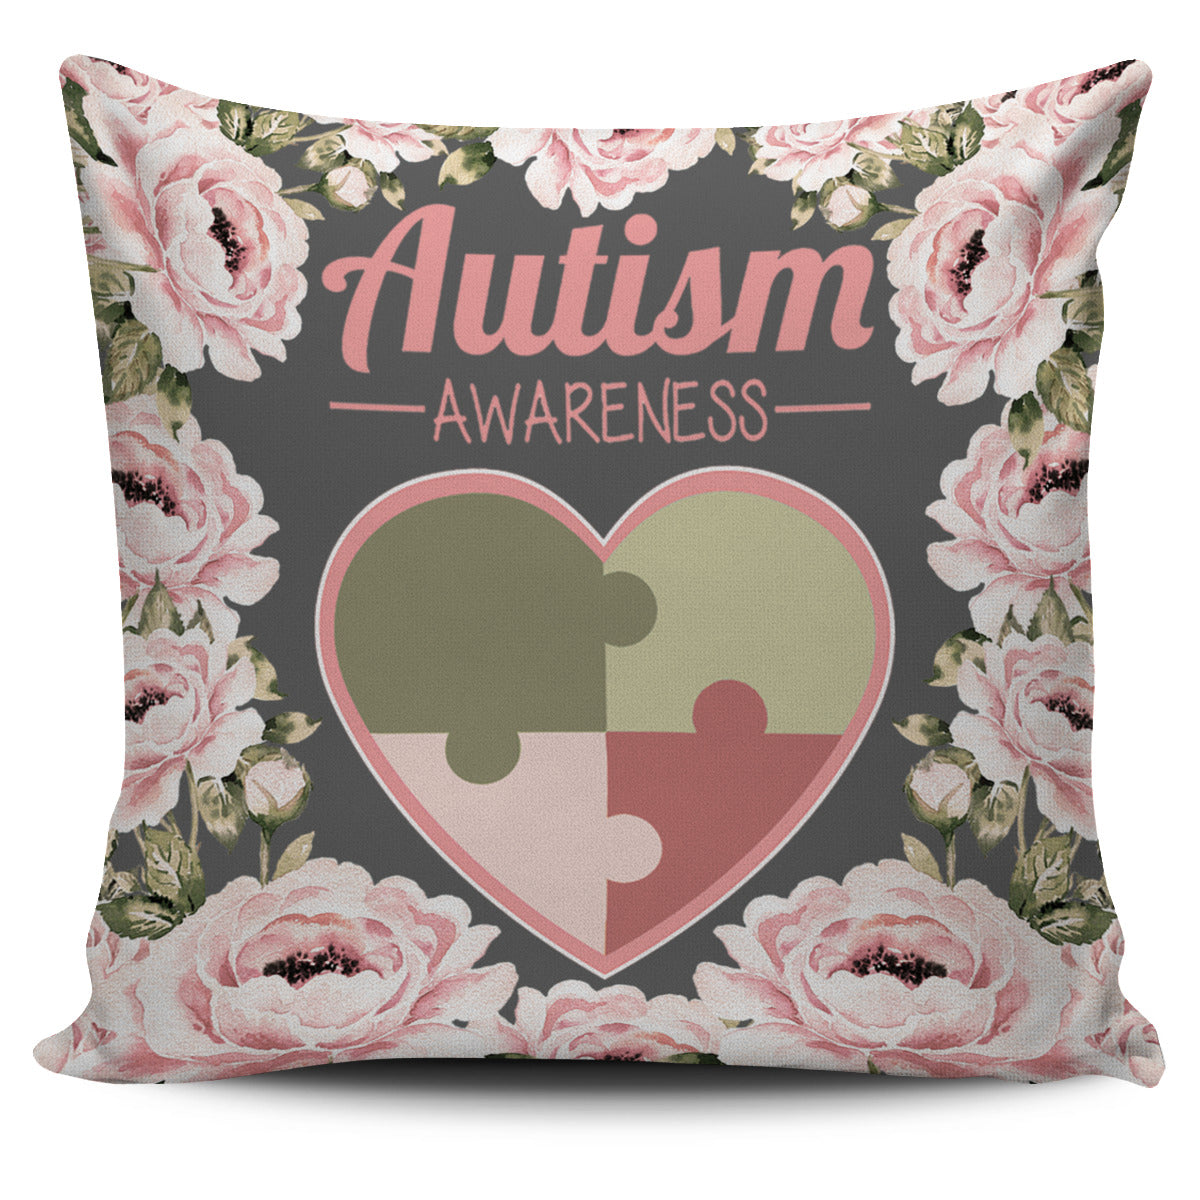 Floral Autism Awareness Pillow Cover